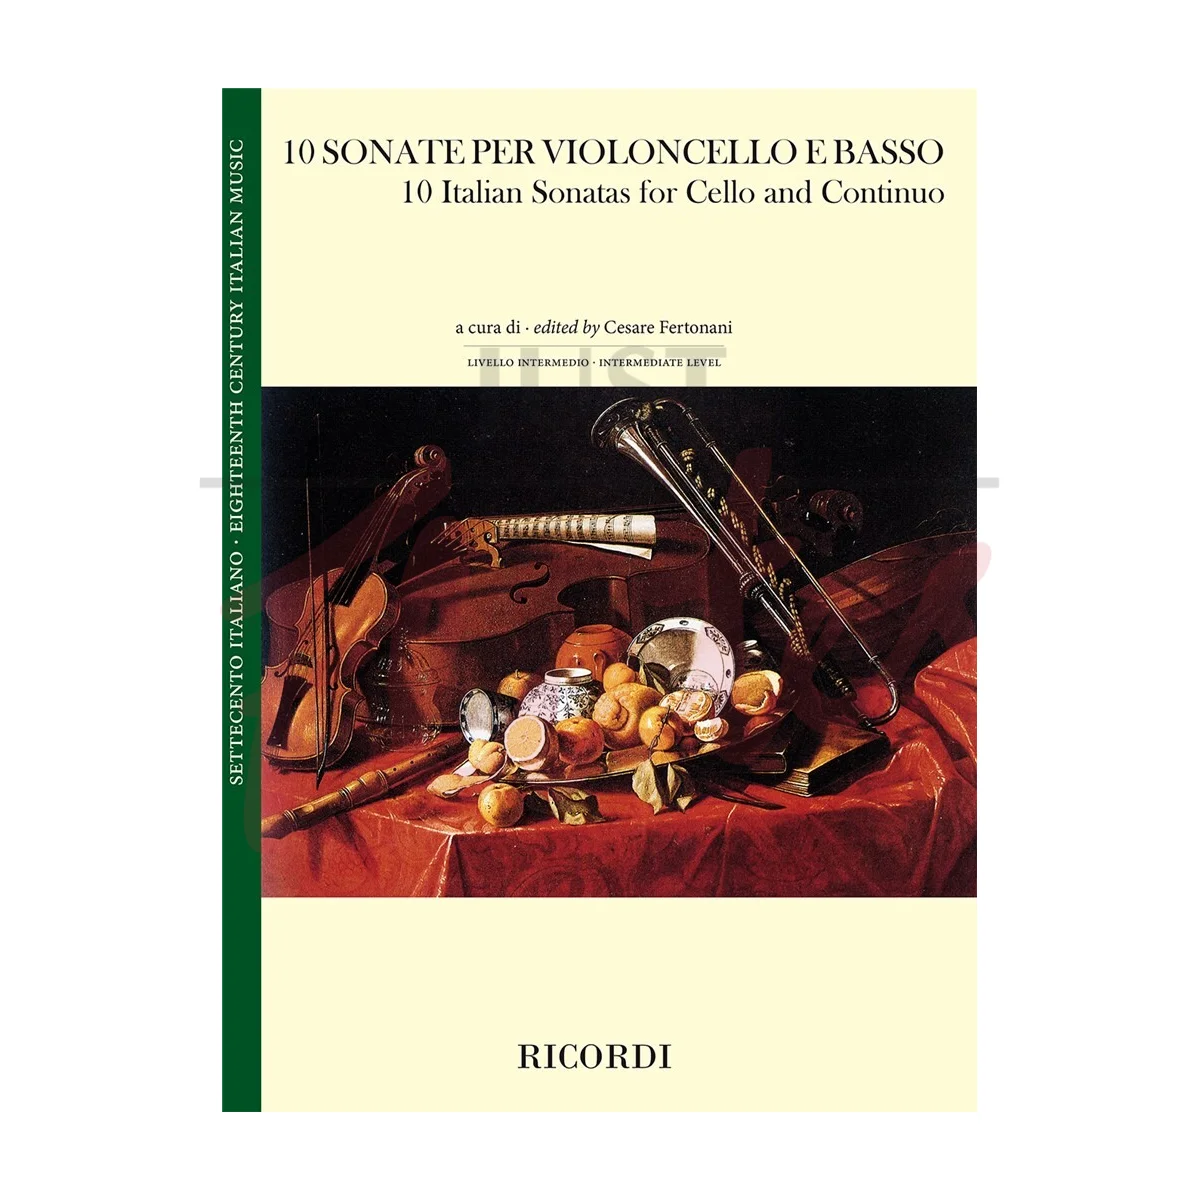 10 Italian Sonatas for Cello and Continuo